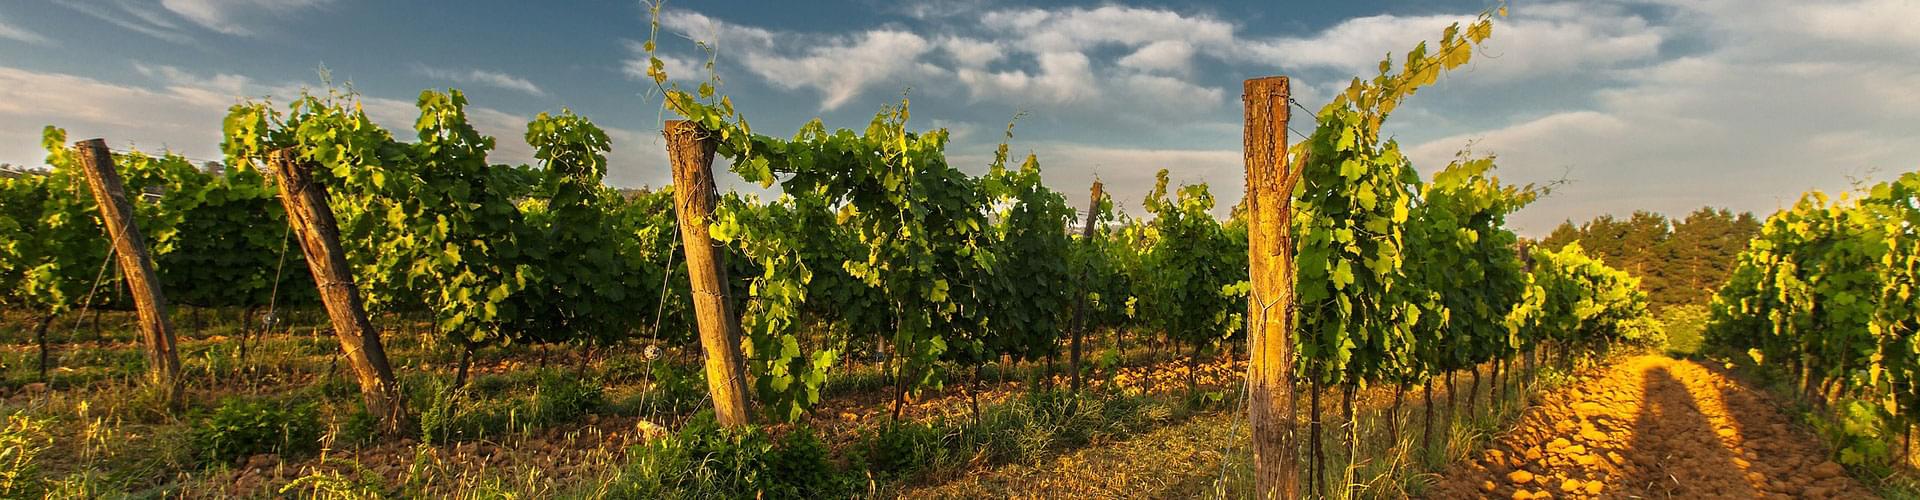 Wine production in Puglia